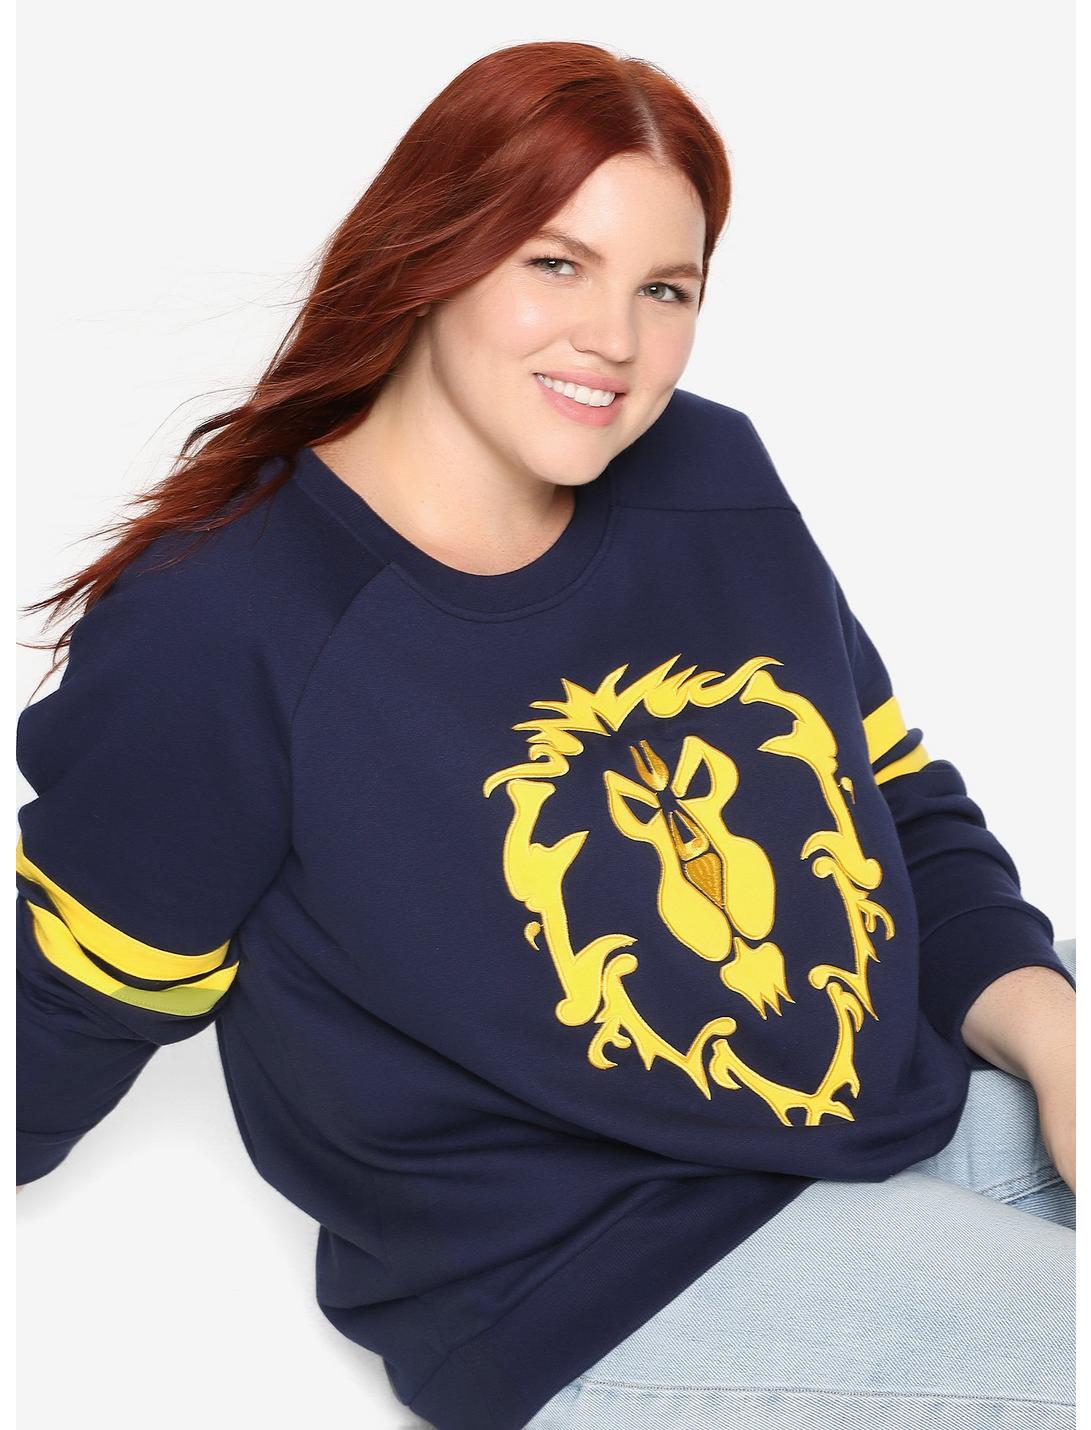 World Of Warcraft Alliance Sweatshirt Plus Size, PEACOAT, hi-res